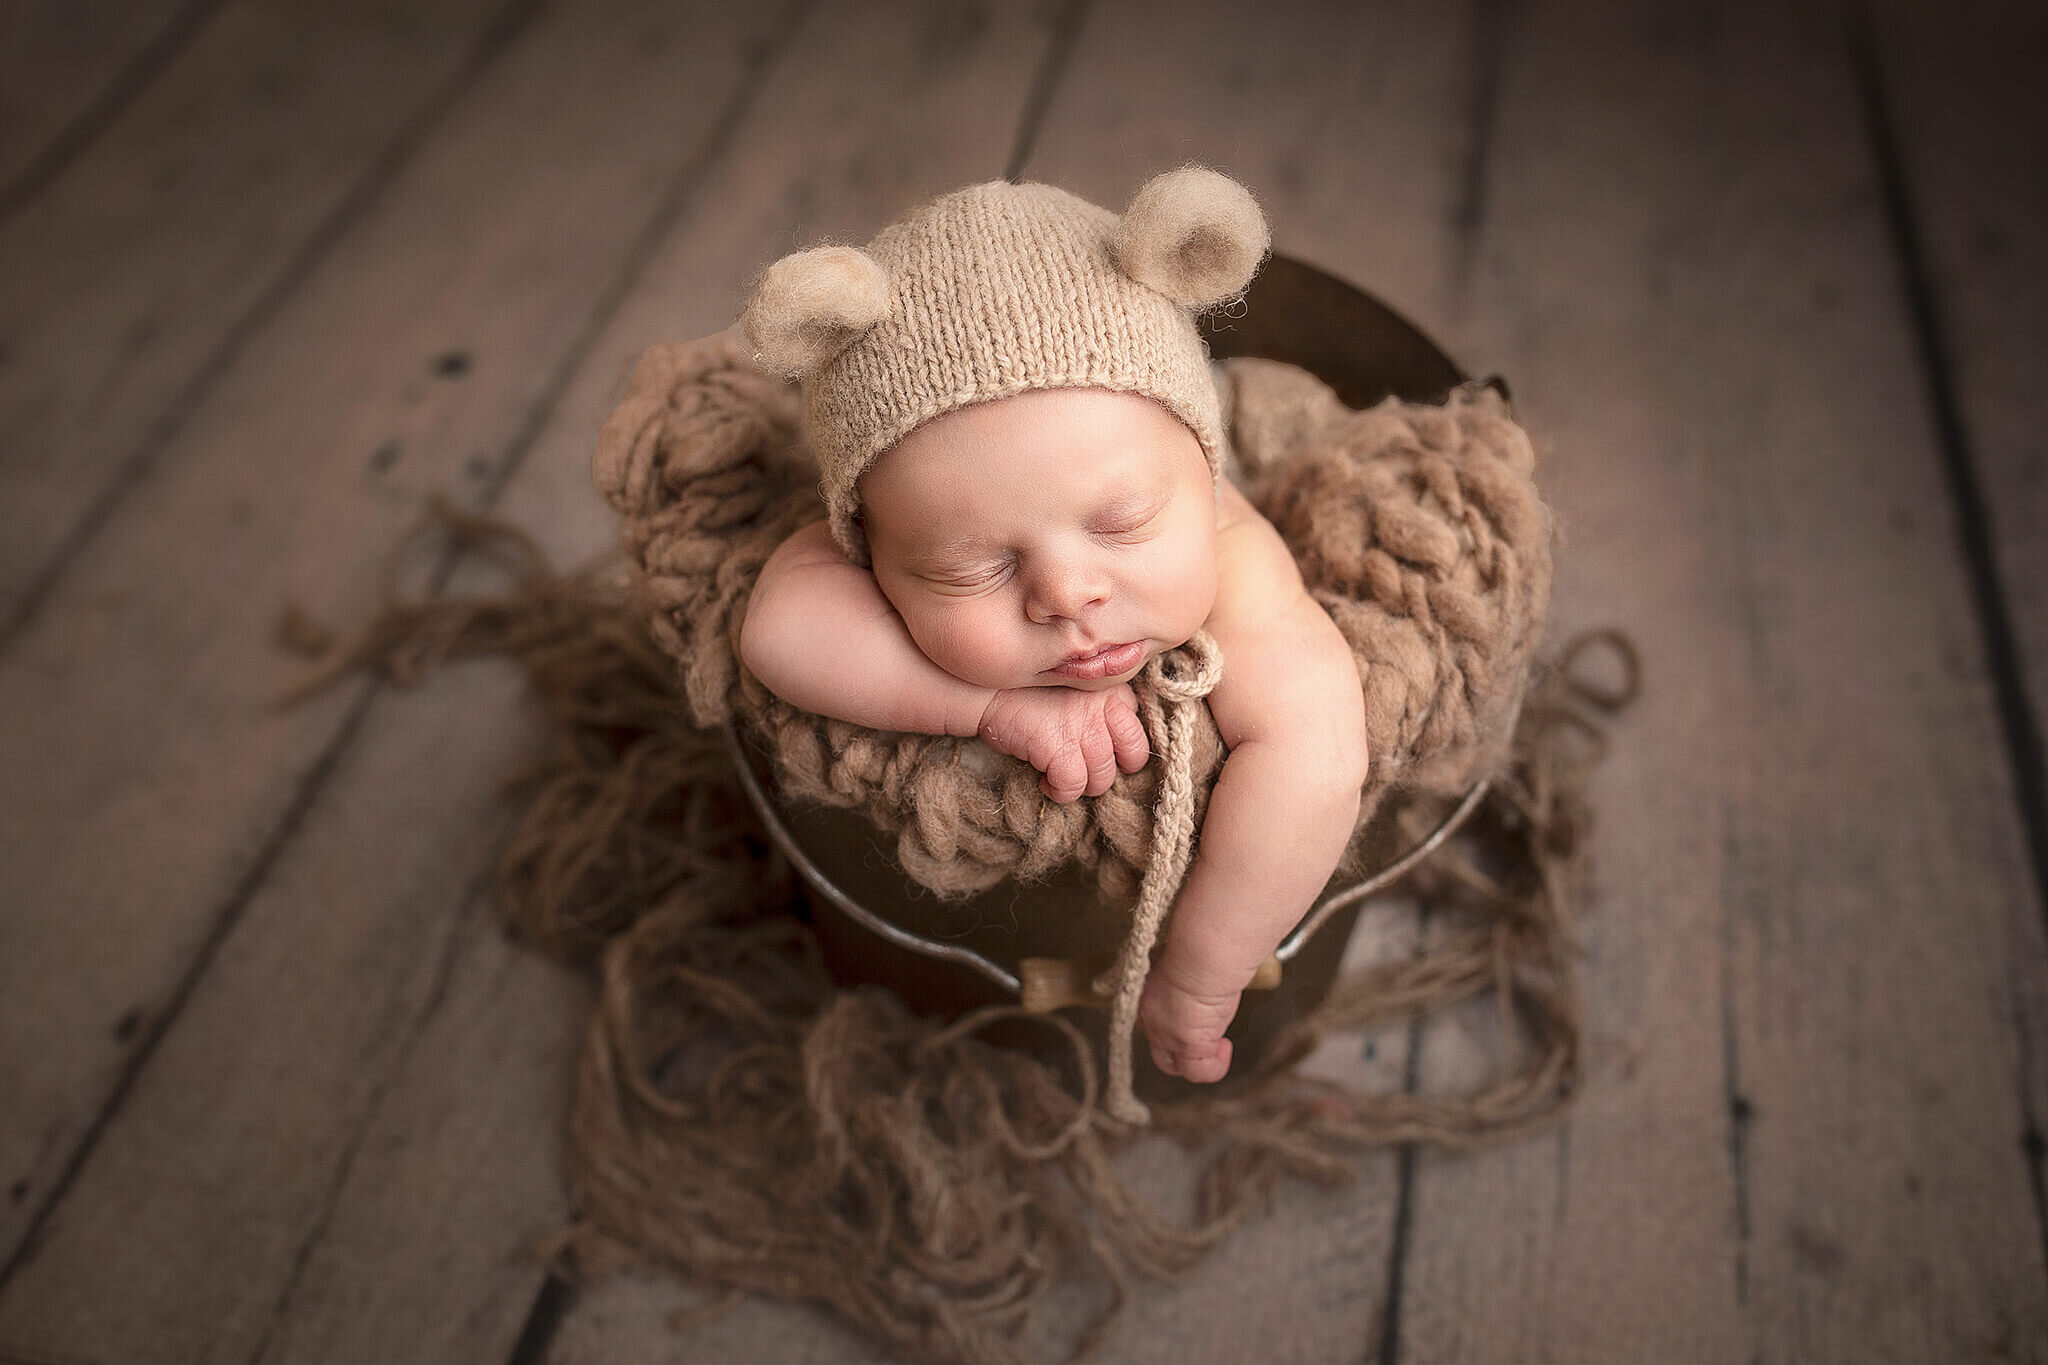 Newborn baby boy posed in bucket on grey wood floor.  Baby boy is wearing a little bear hat.